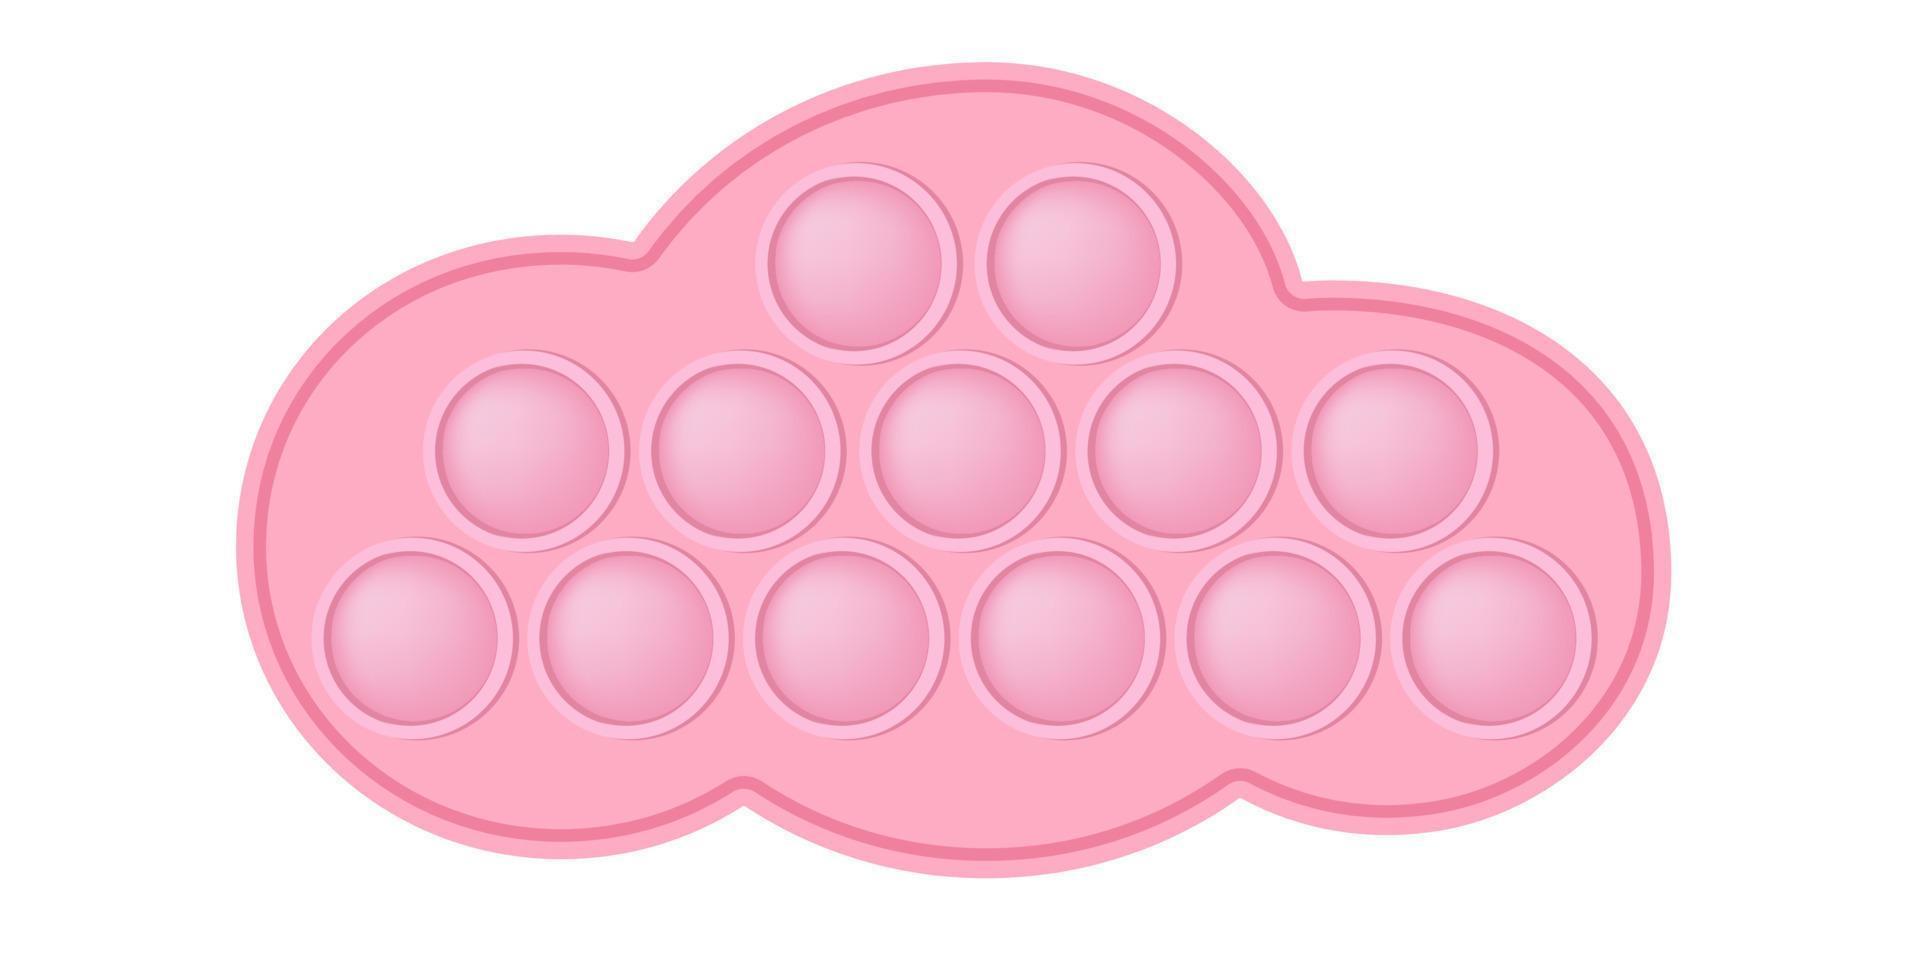 popping toy jouet en silicone nuage rose pour les fidgets. jouet anti-stress addictif de couleur rose pastel. jouet de développement sensoriel à bulles pour les doigts des enfants. illustration vectorielle isolée vecteur